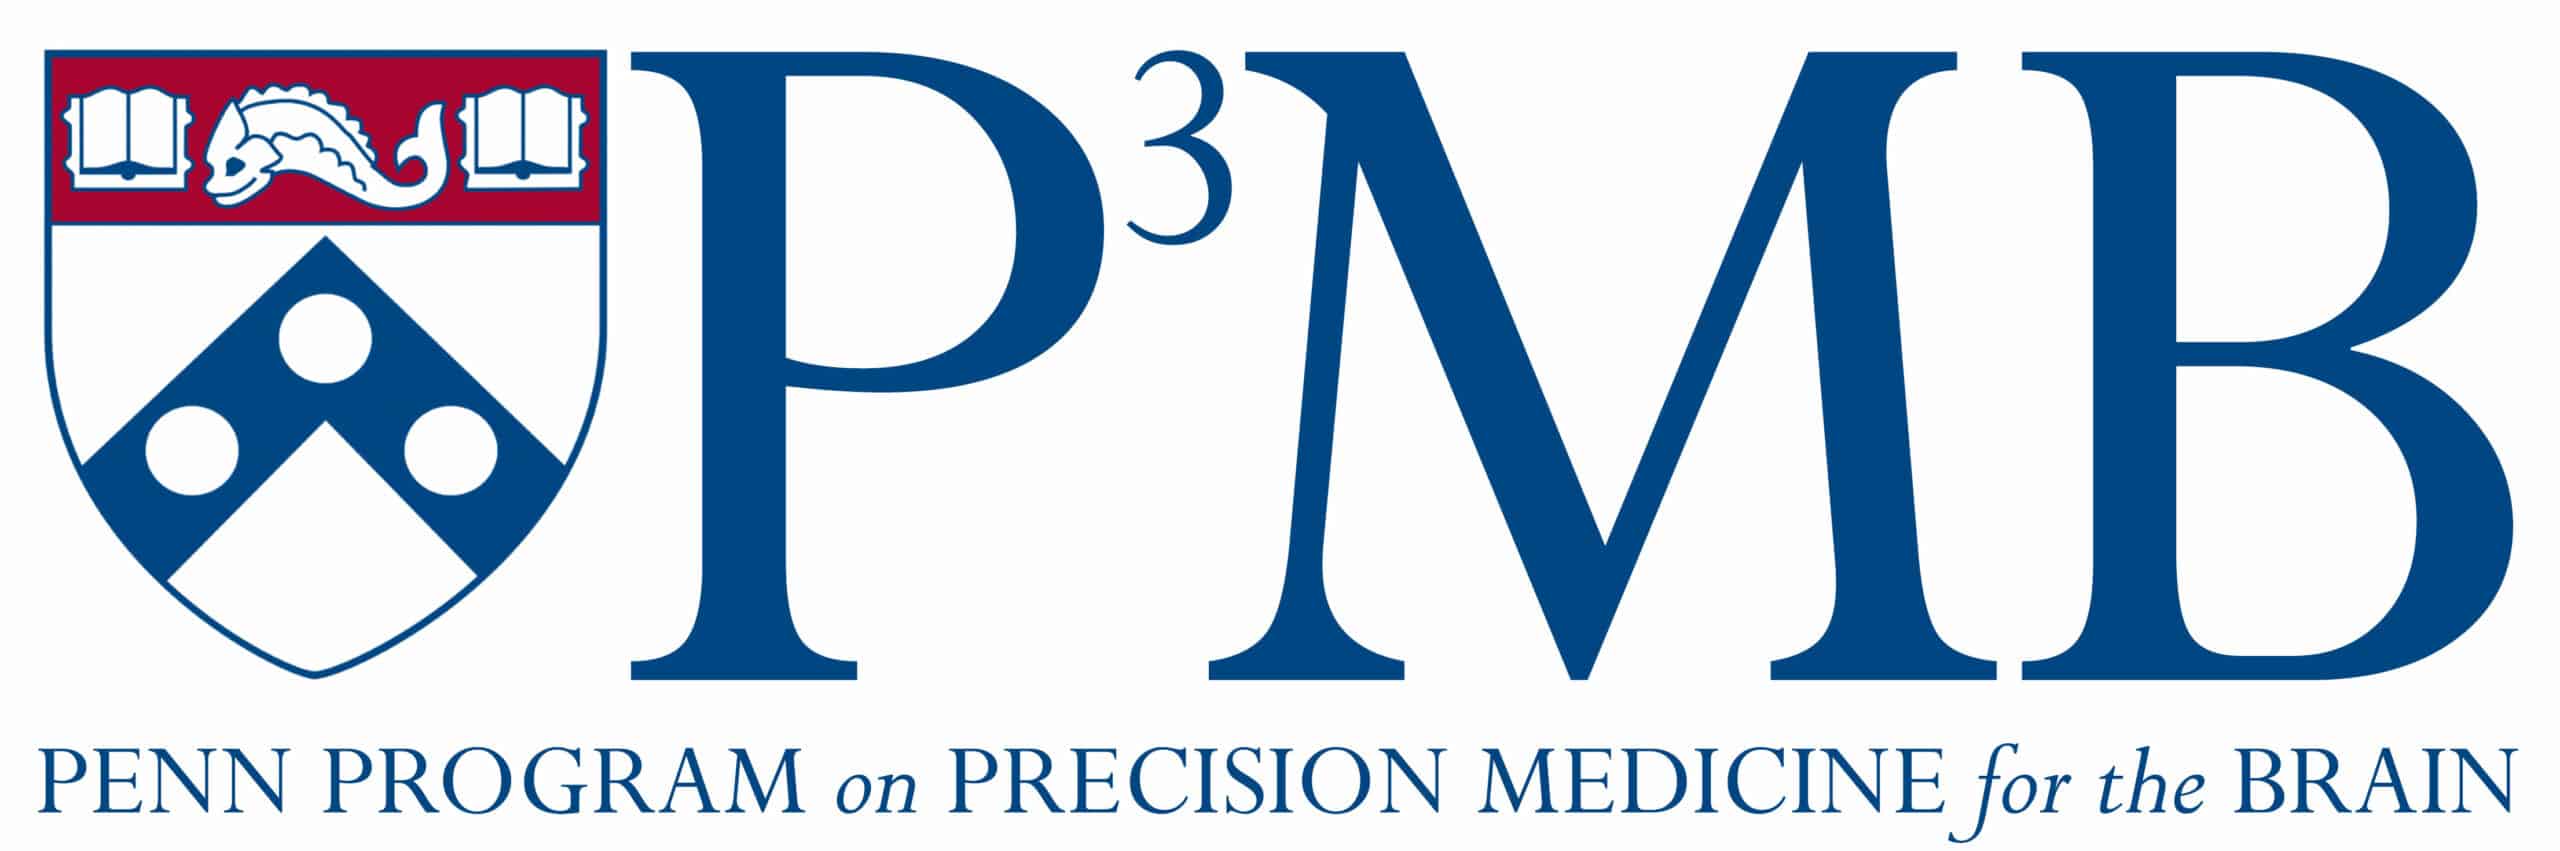 The Penn Program on Precision Medicine for the Brain - Penn Memory